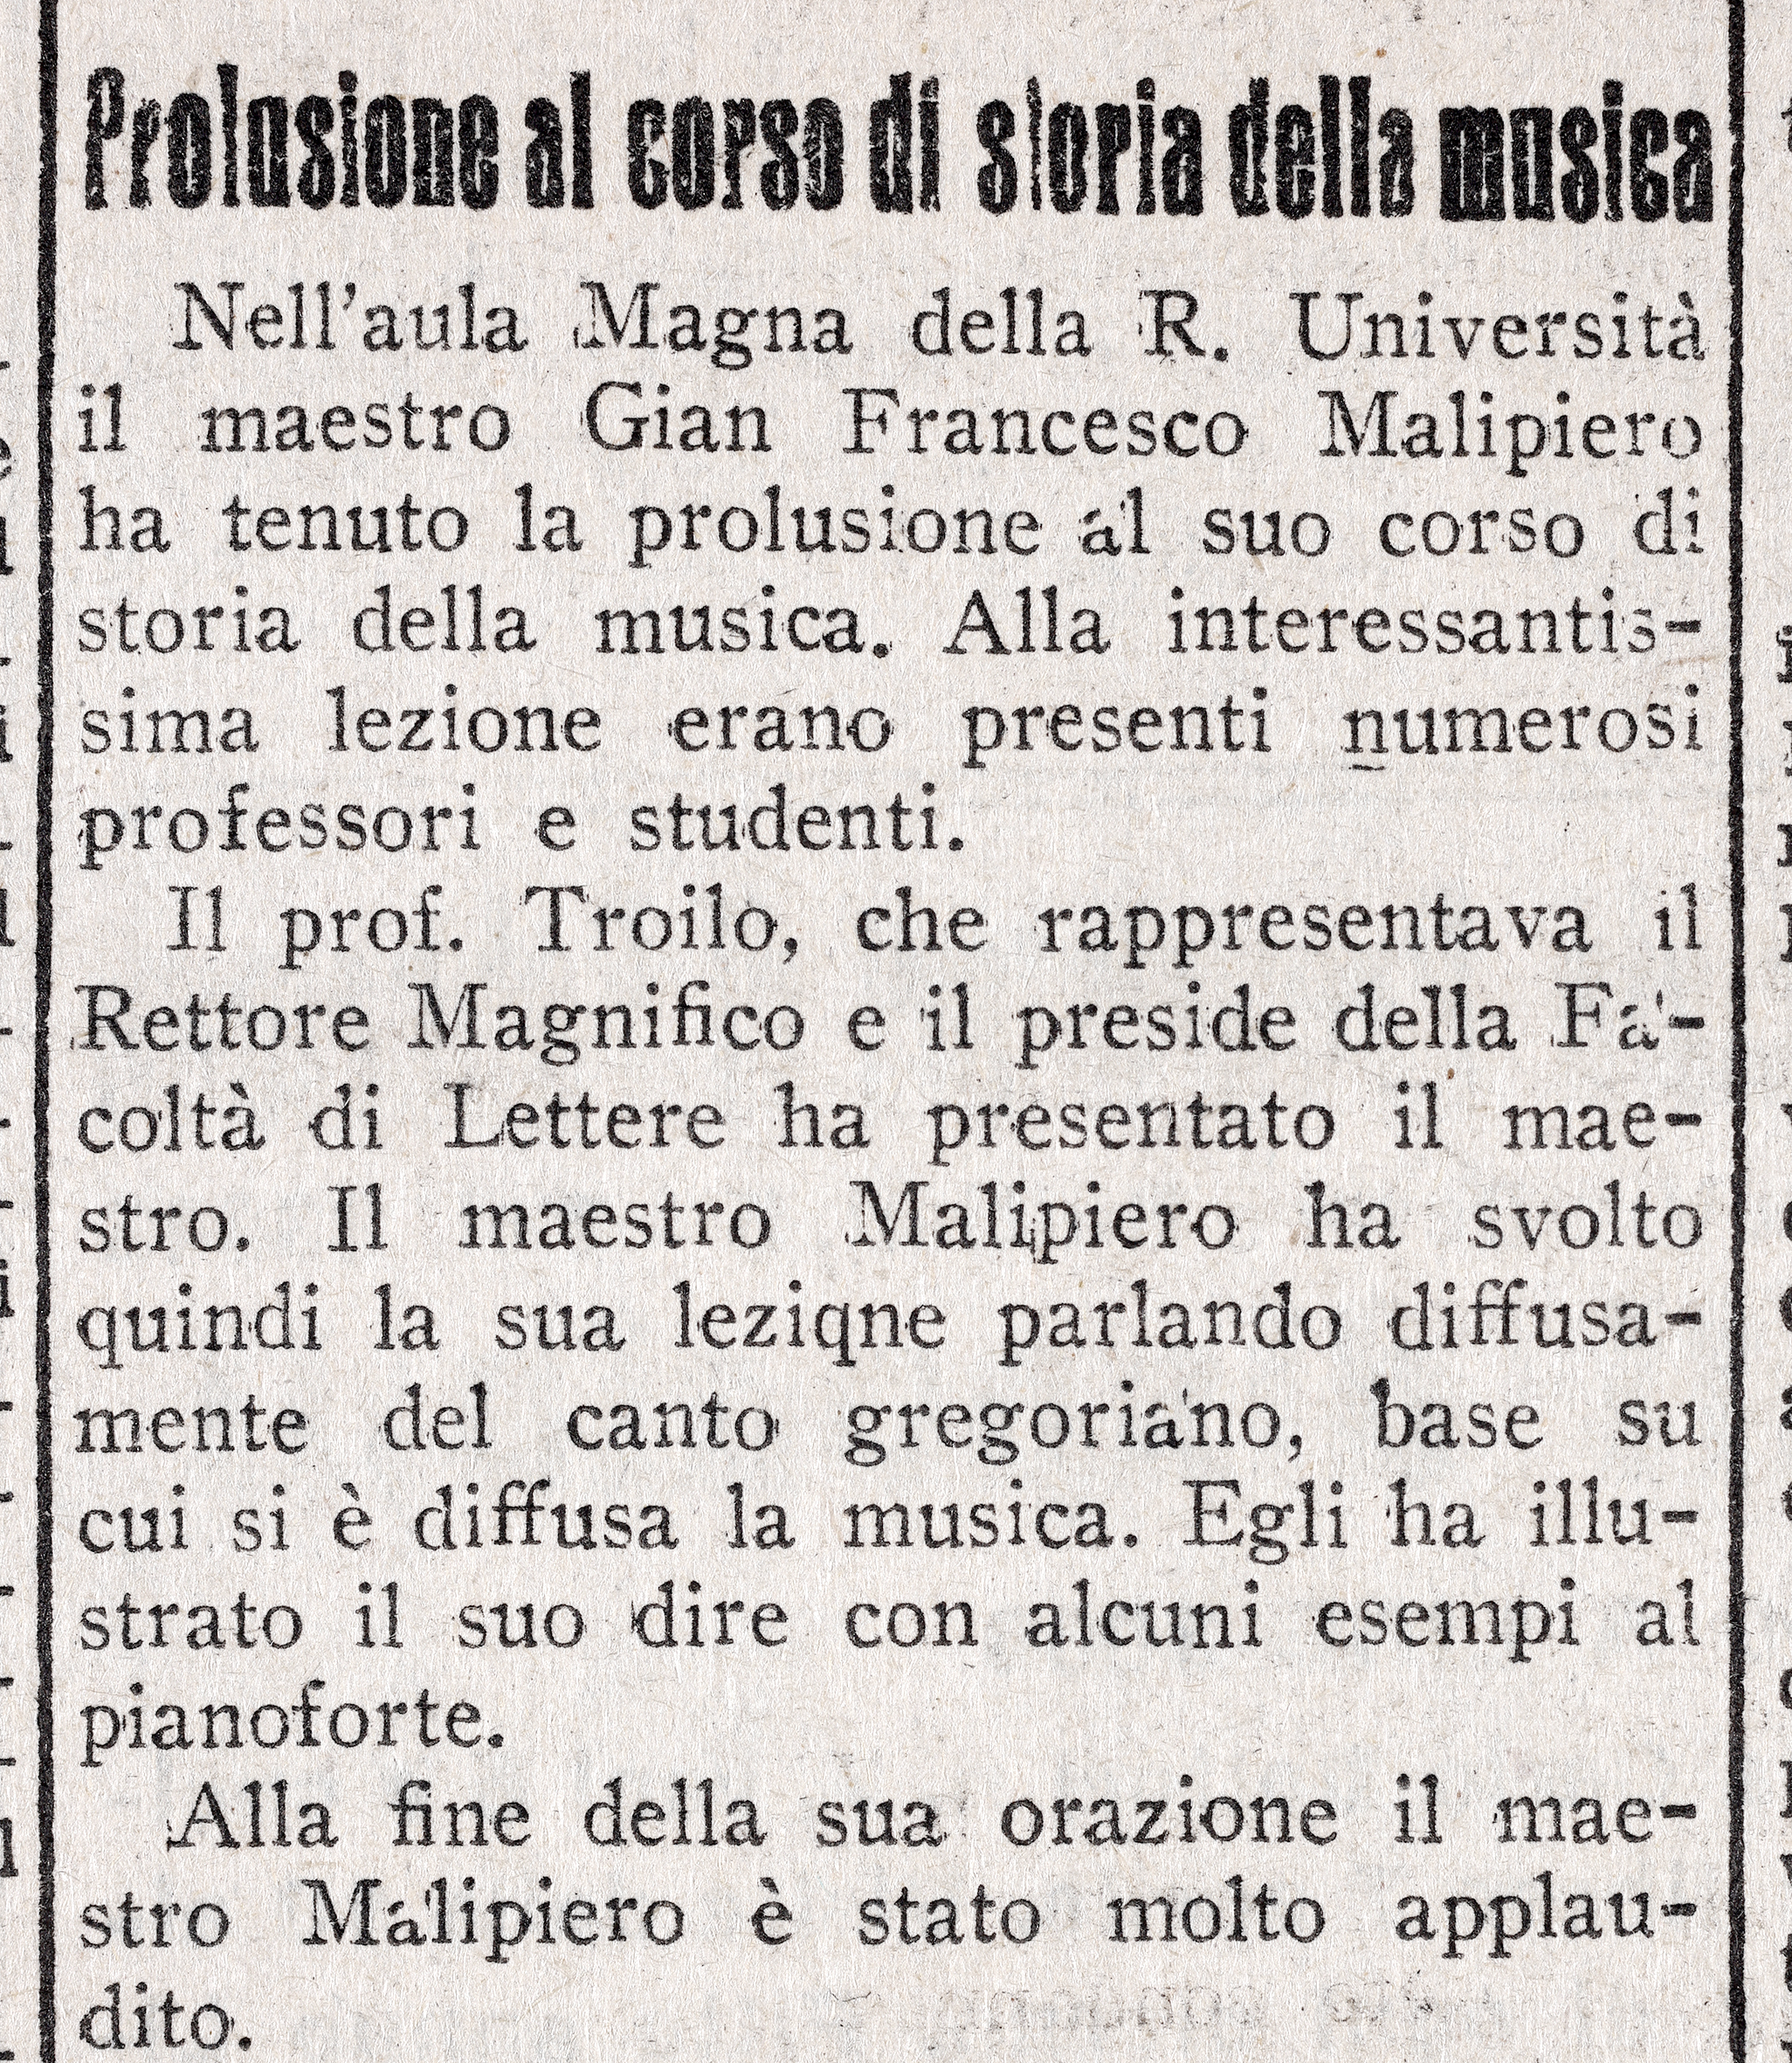 Il Veneto, 4 marzo 1936-Prolusione al corso di storia della musica